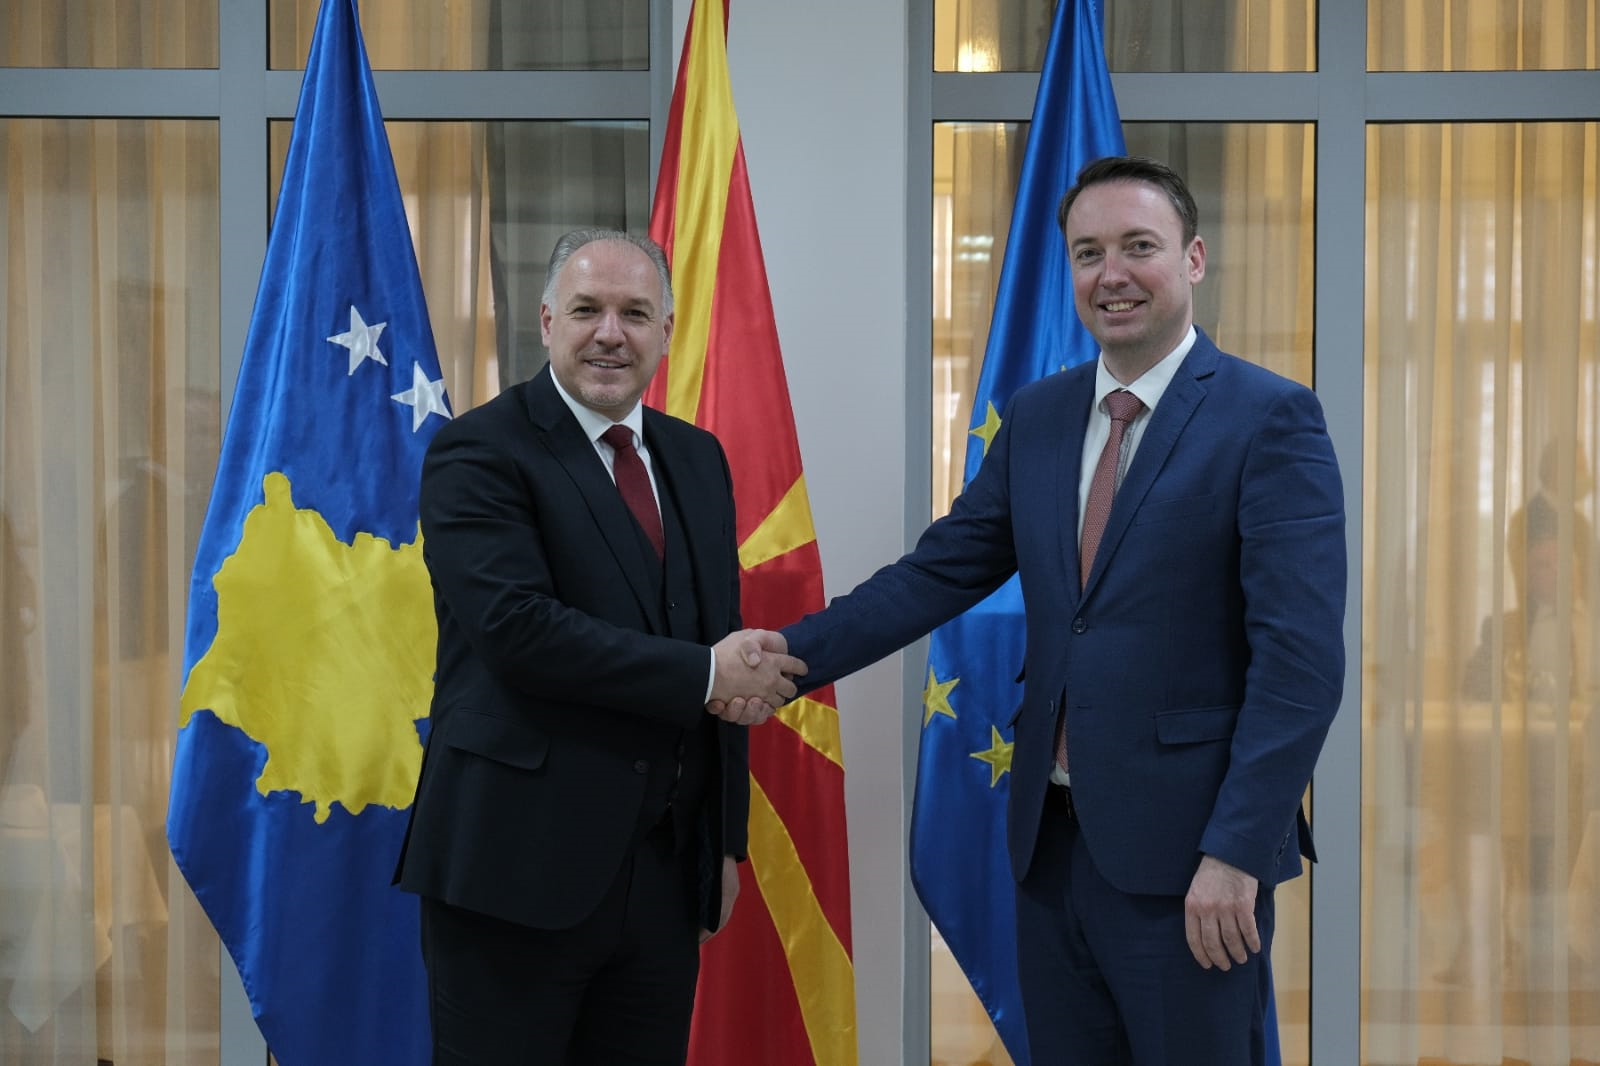 Ministri i Zhvillimit Rajonal z.Fikrim Damka u takua me Ministrin e  Vetëqeverisjes Lokale të Maqedonisë së Veriut z. Goran Milevski